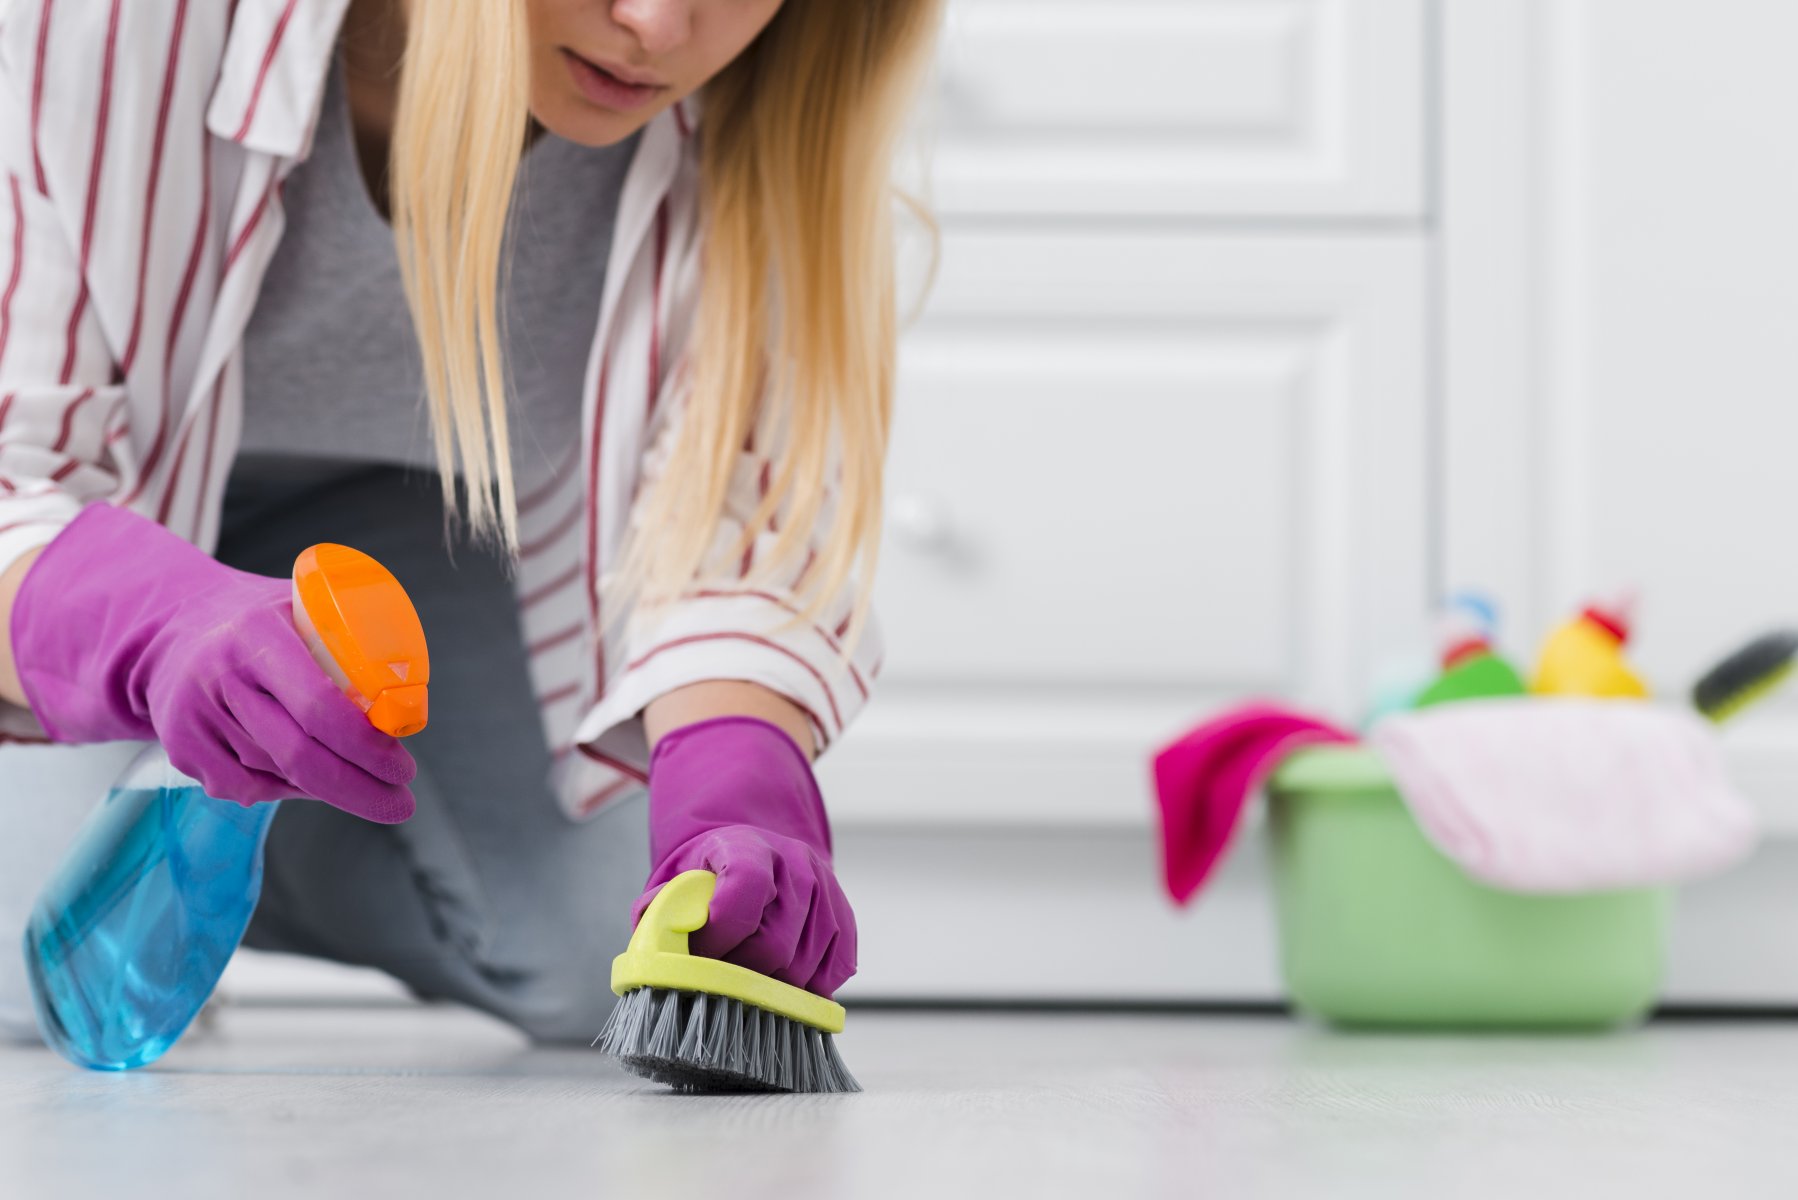 Невролог дала советы по уборке дома без вреда здоровью 